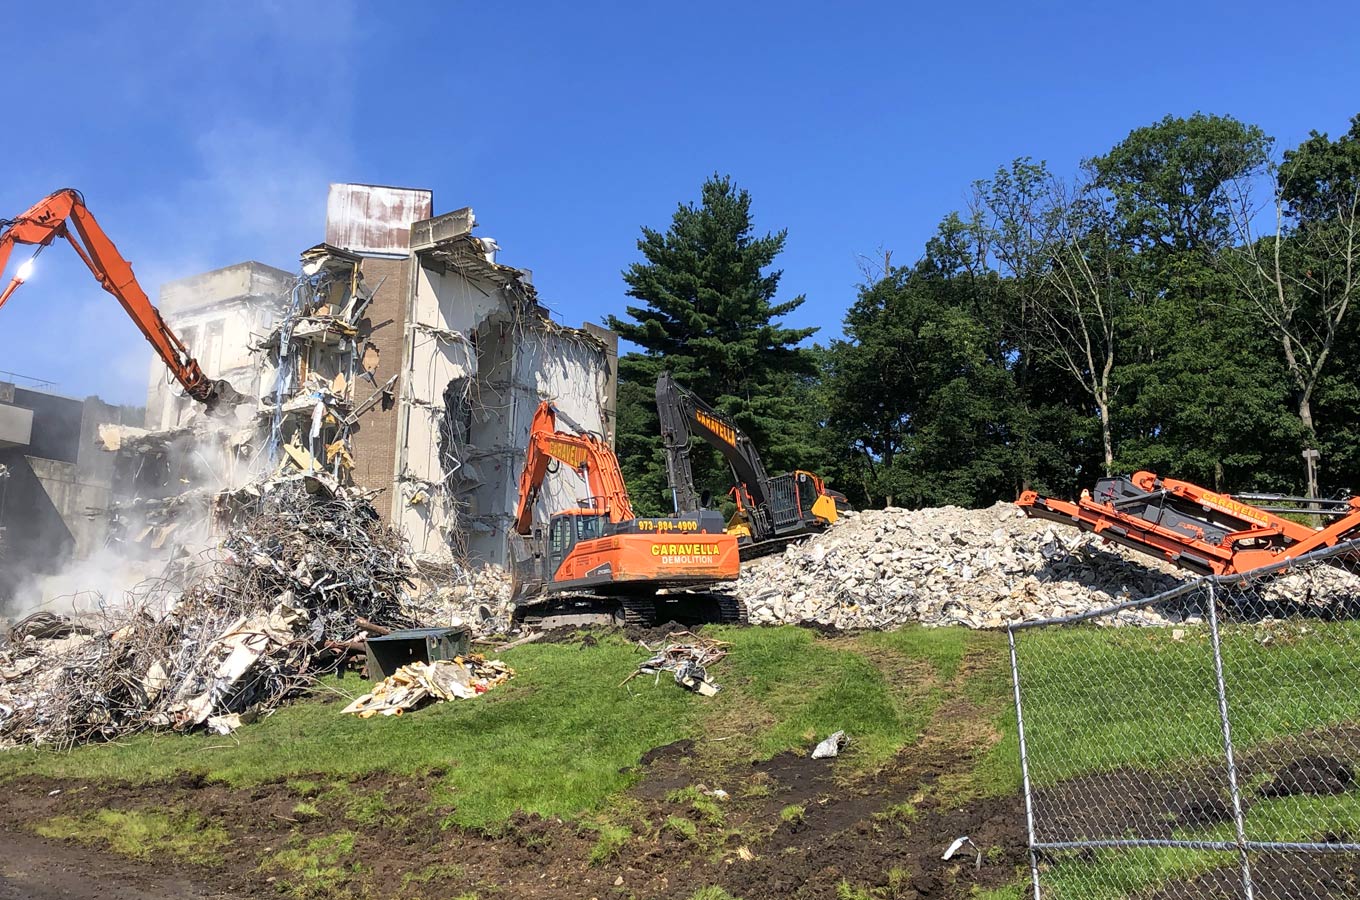 Demolition Services in Atlantic City, NJ 08401 | Caravella Demolition